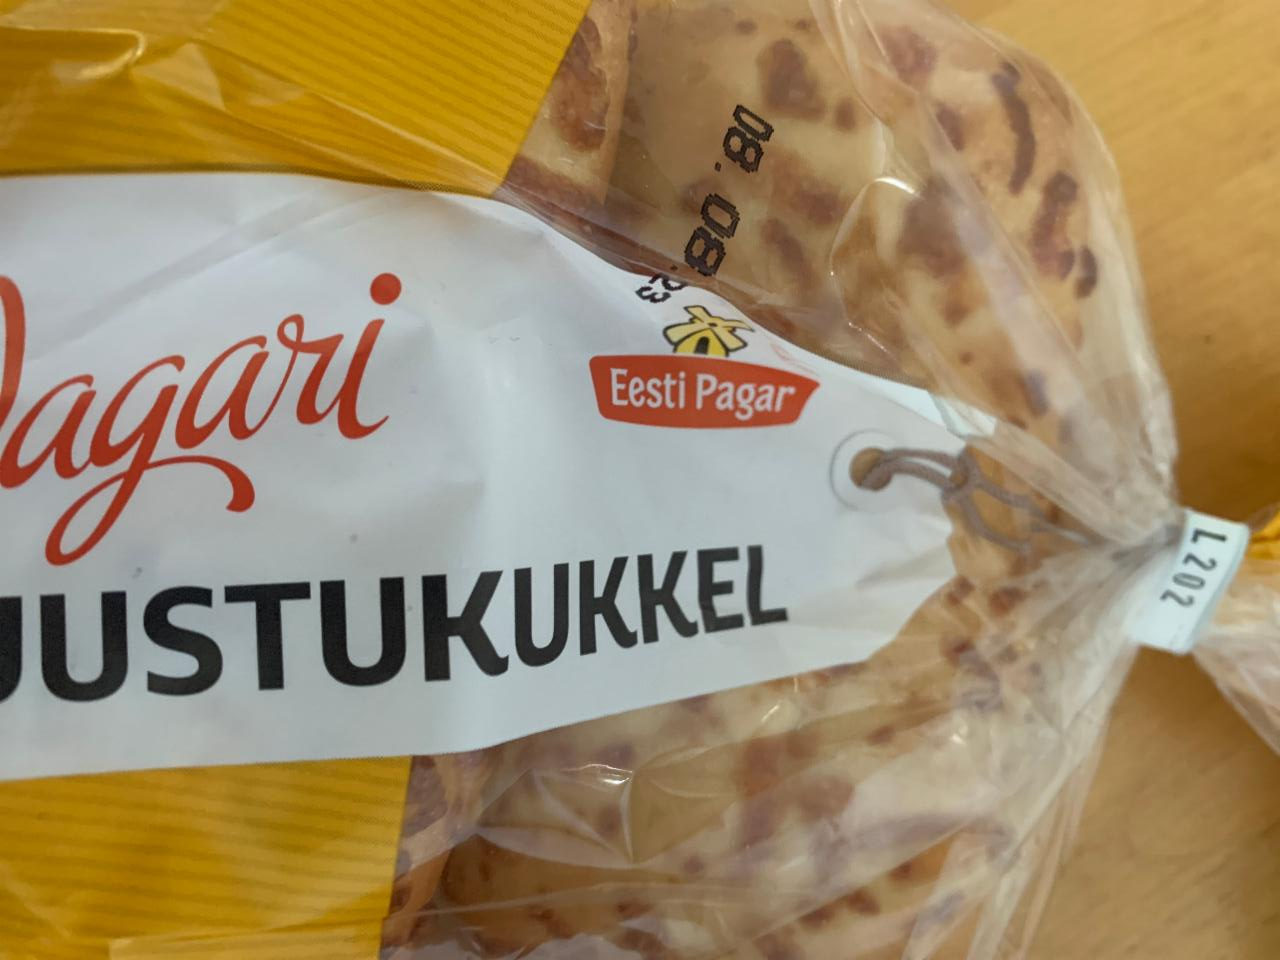 Fotografie - Juustukukkel Eesti Pagar